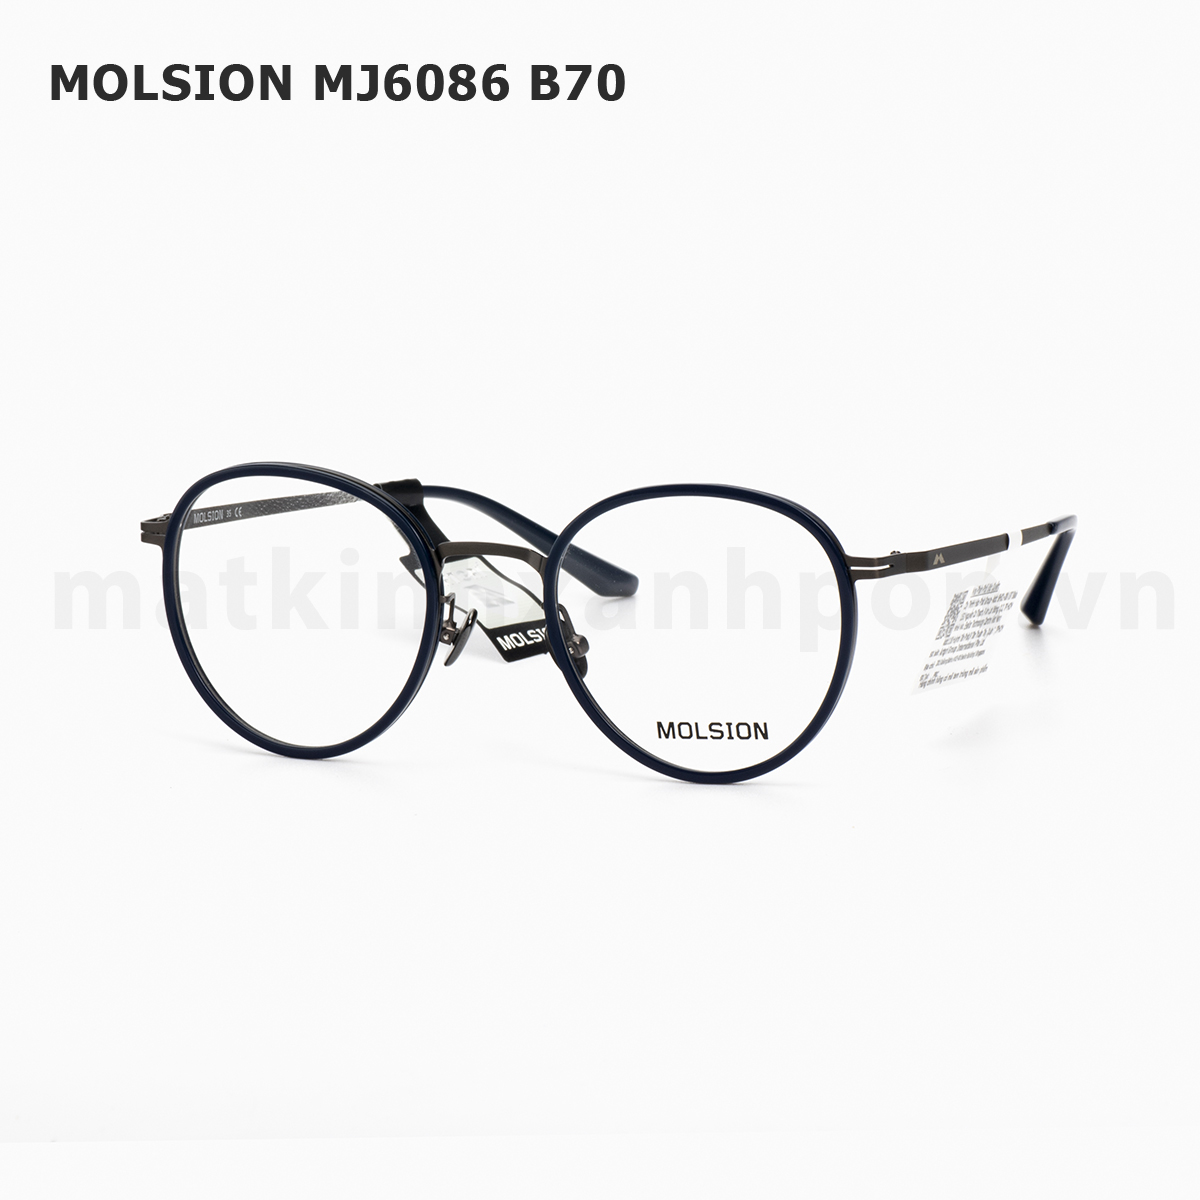 Molsion MJ6086 B70